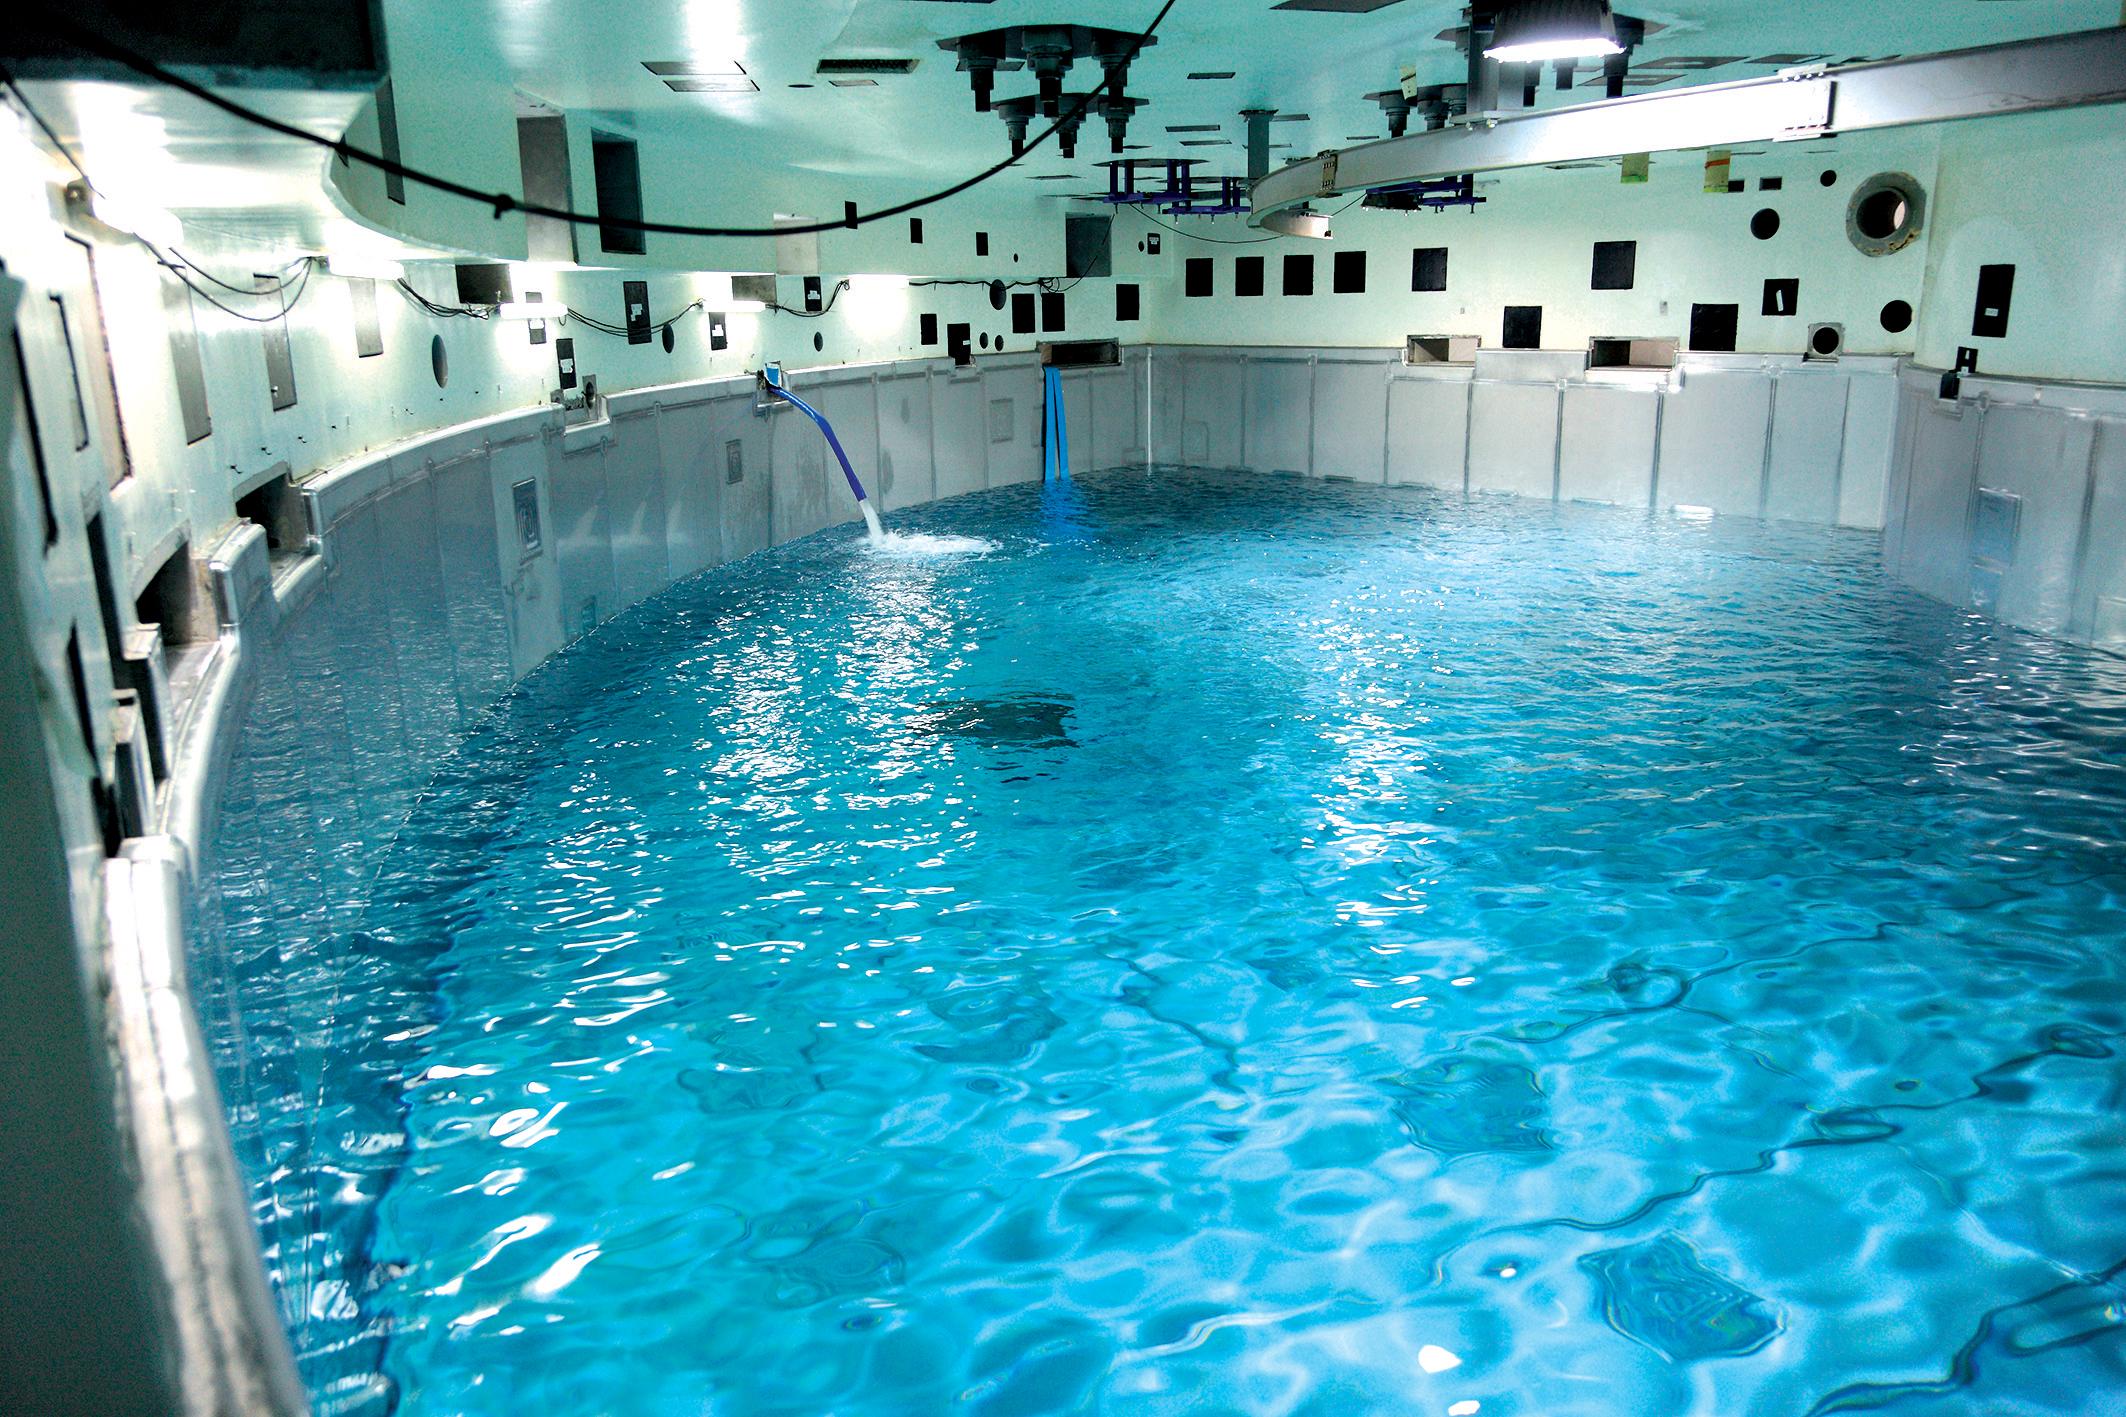 Le réservoir de sauvegarde du bâtiment réacteur est une innovation de sûreté de l’EPR   de Flamanville (Manche). Des essais de mise en eau ont été réalisés pour tester l’étanchéité de son revêtement en inox. 